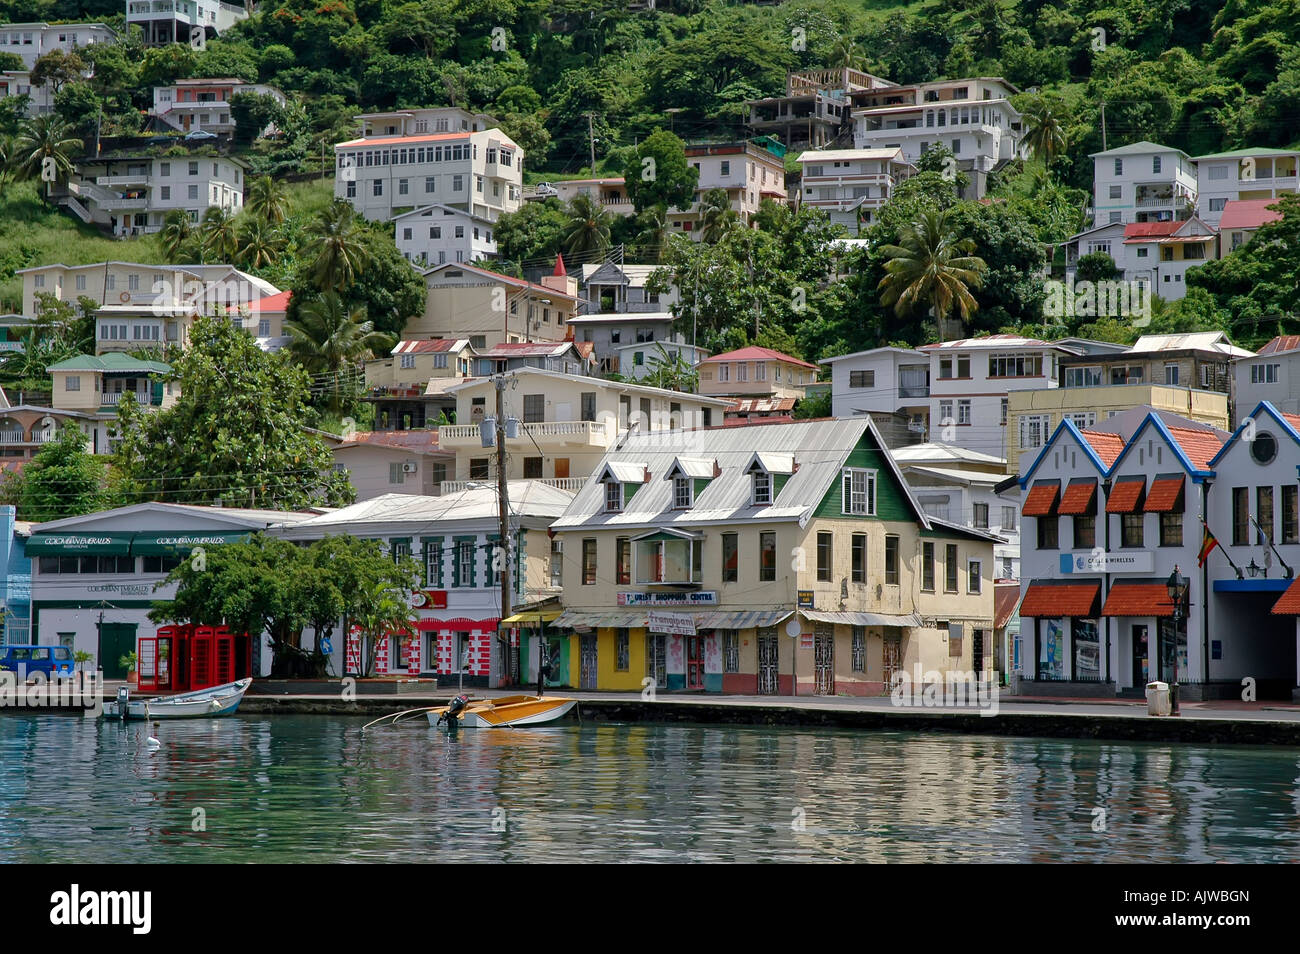 St George's, Grenade capitale de l'île des Caraïbes ville paysage pittoresque Banque D'Images